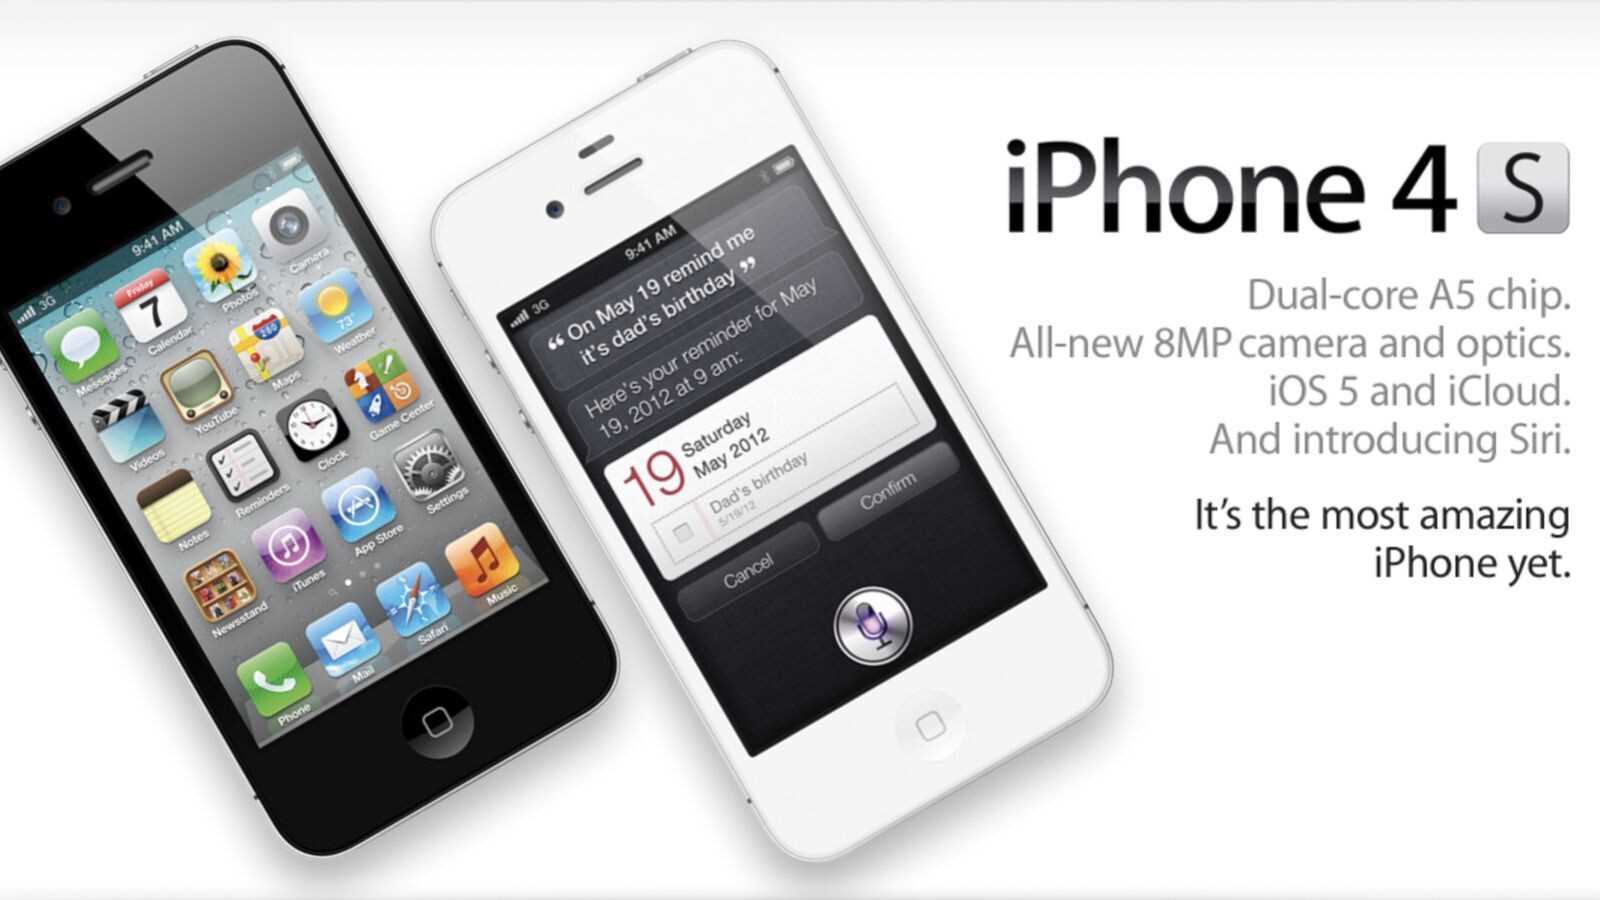 Das iPhone 4S kam 2011 auf den Markt – Apple willigt ein, bestimmten iPhone 4S-Nutzern bis zu 15 US-Dollar für die Beilegung eines Rechtsstreits zu zahlen